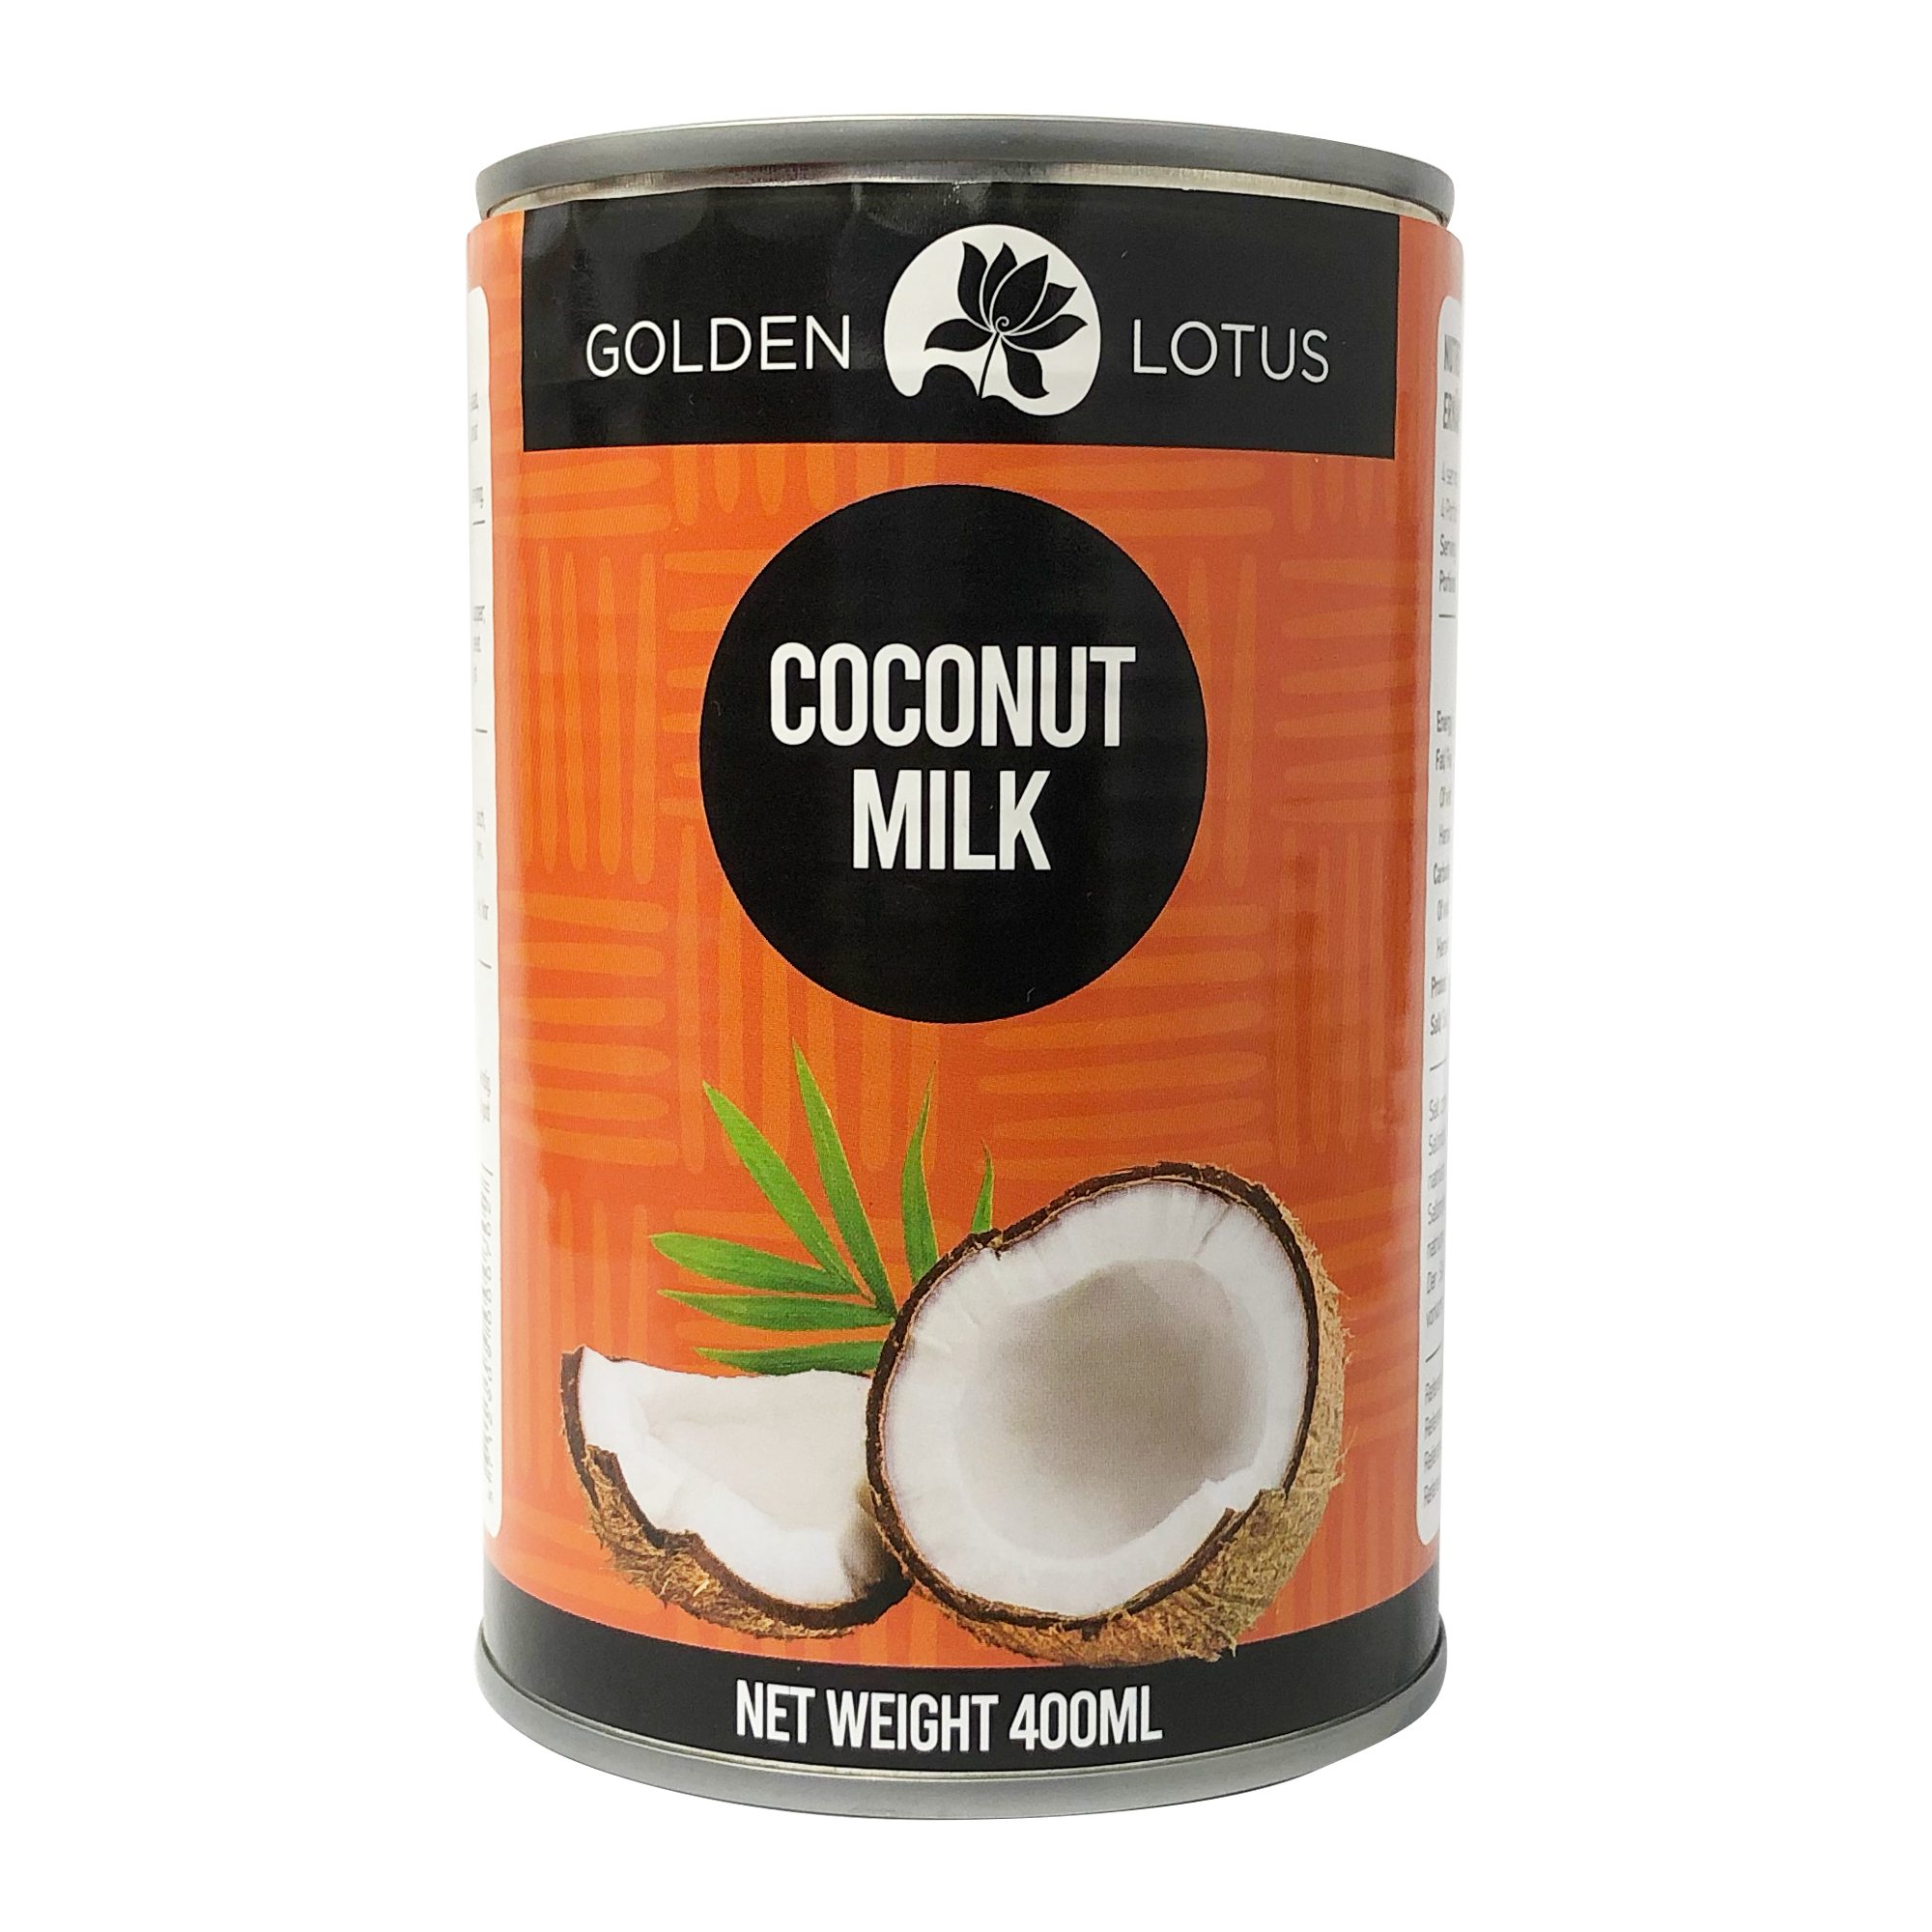 Golden Lotus Coconut Milk 400ml (17-19%)